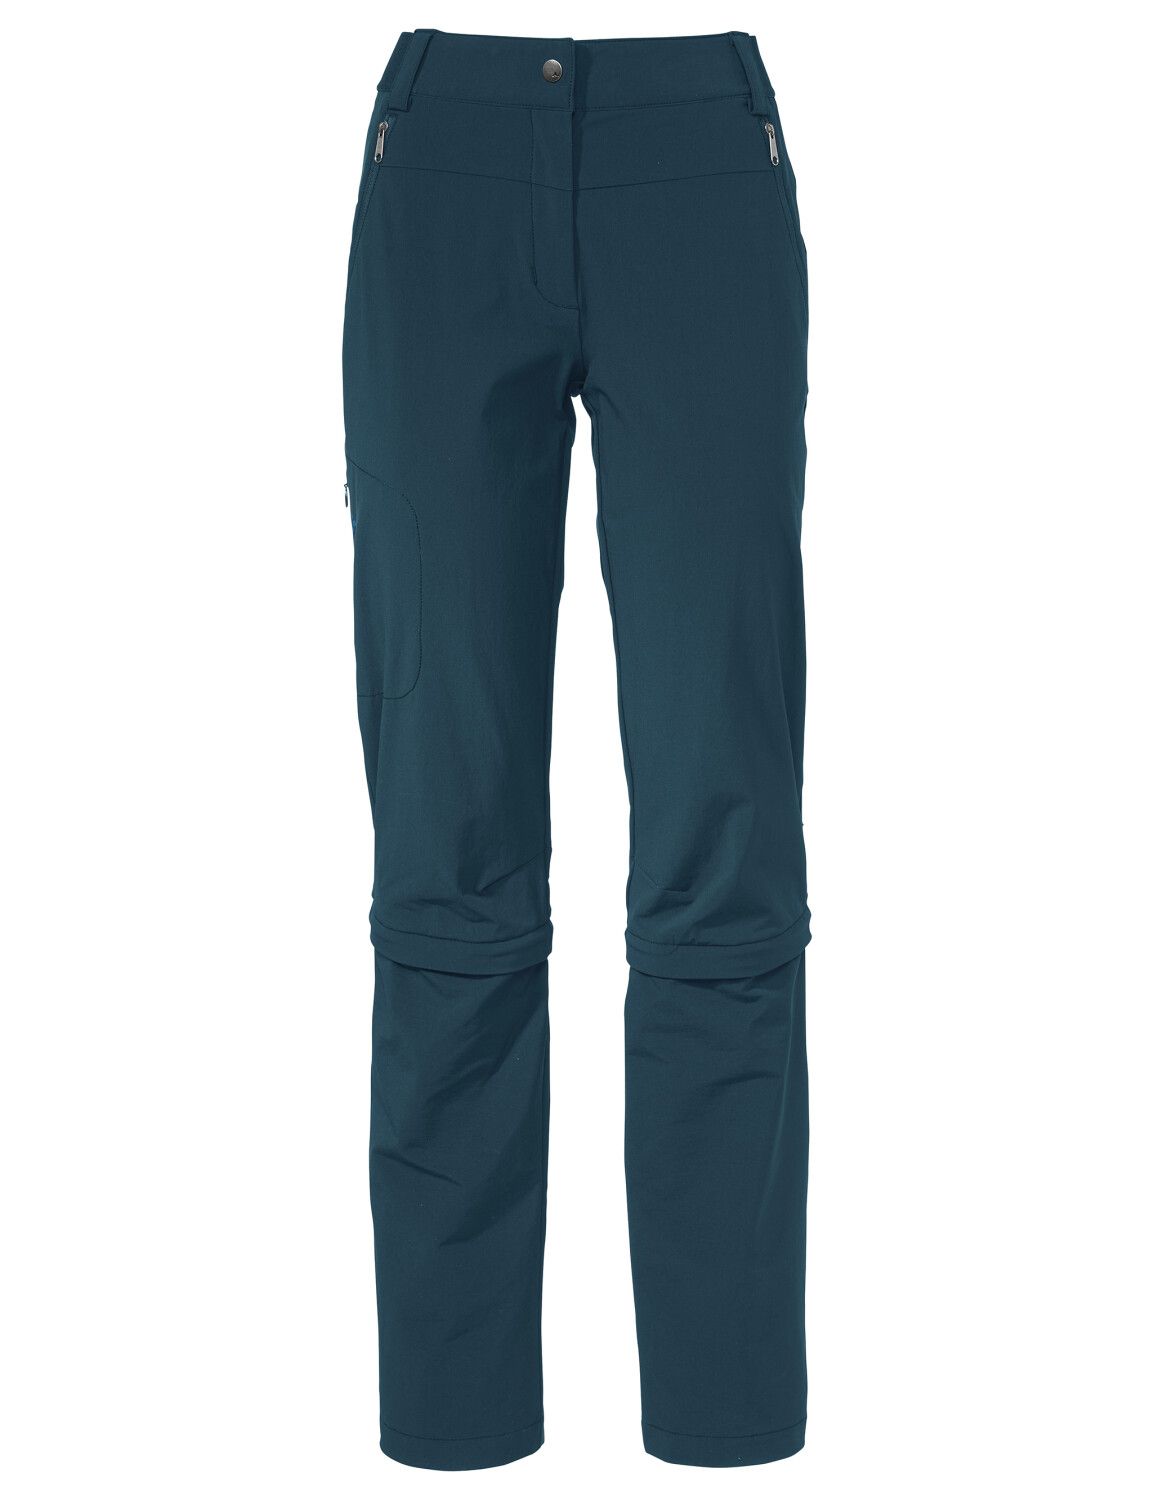 VAUDE Women's Farley Stretch Capri T-Zip Pants III (Bild 40)